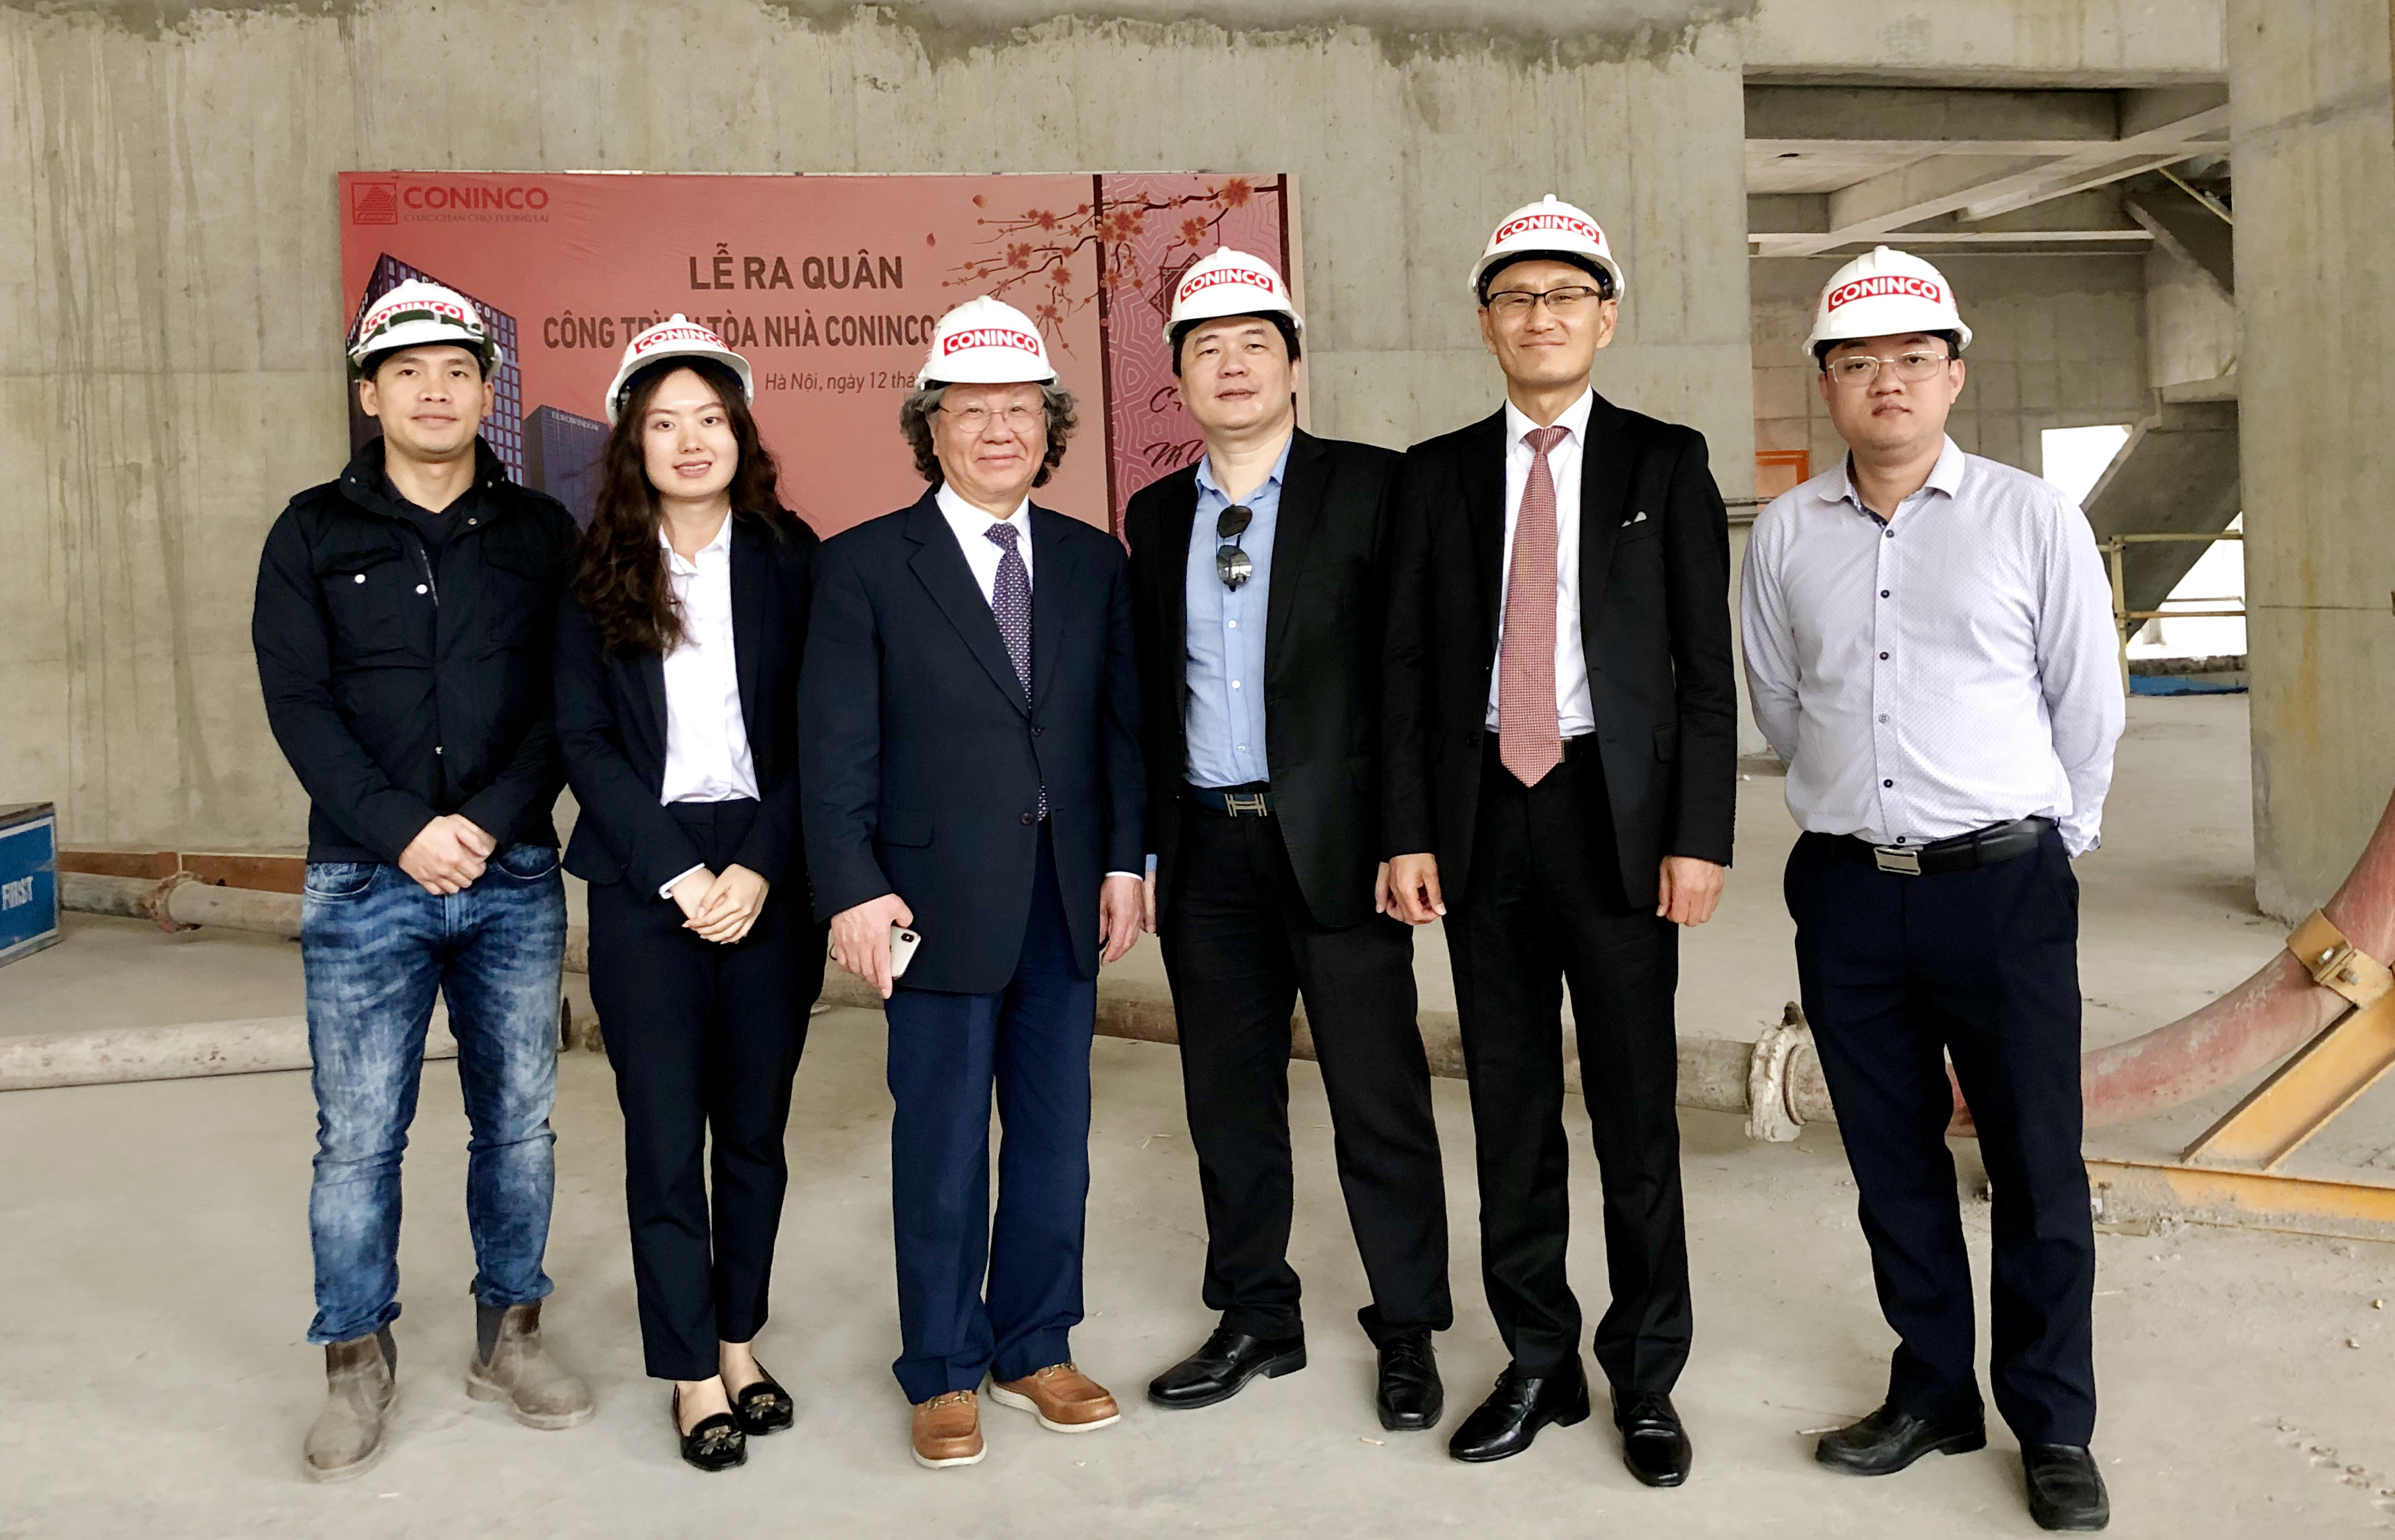 Chủ tịch Tập đoàn SAMYANG Hàn Quốc đến làm việc và thăm công trường dự án CONINCO TOWER 